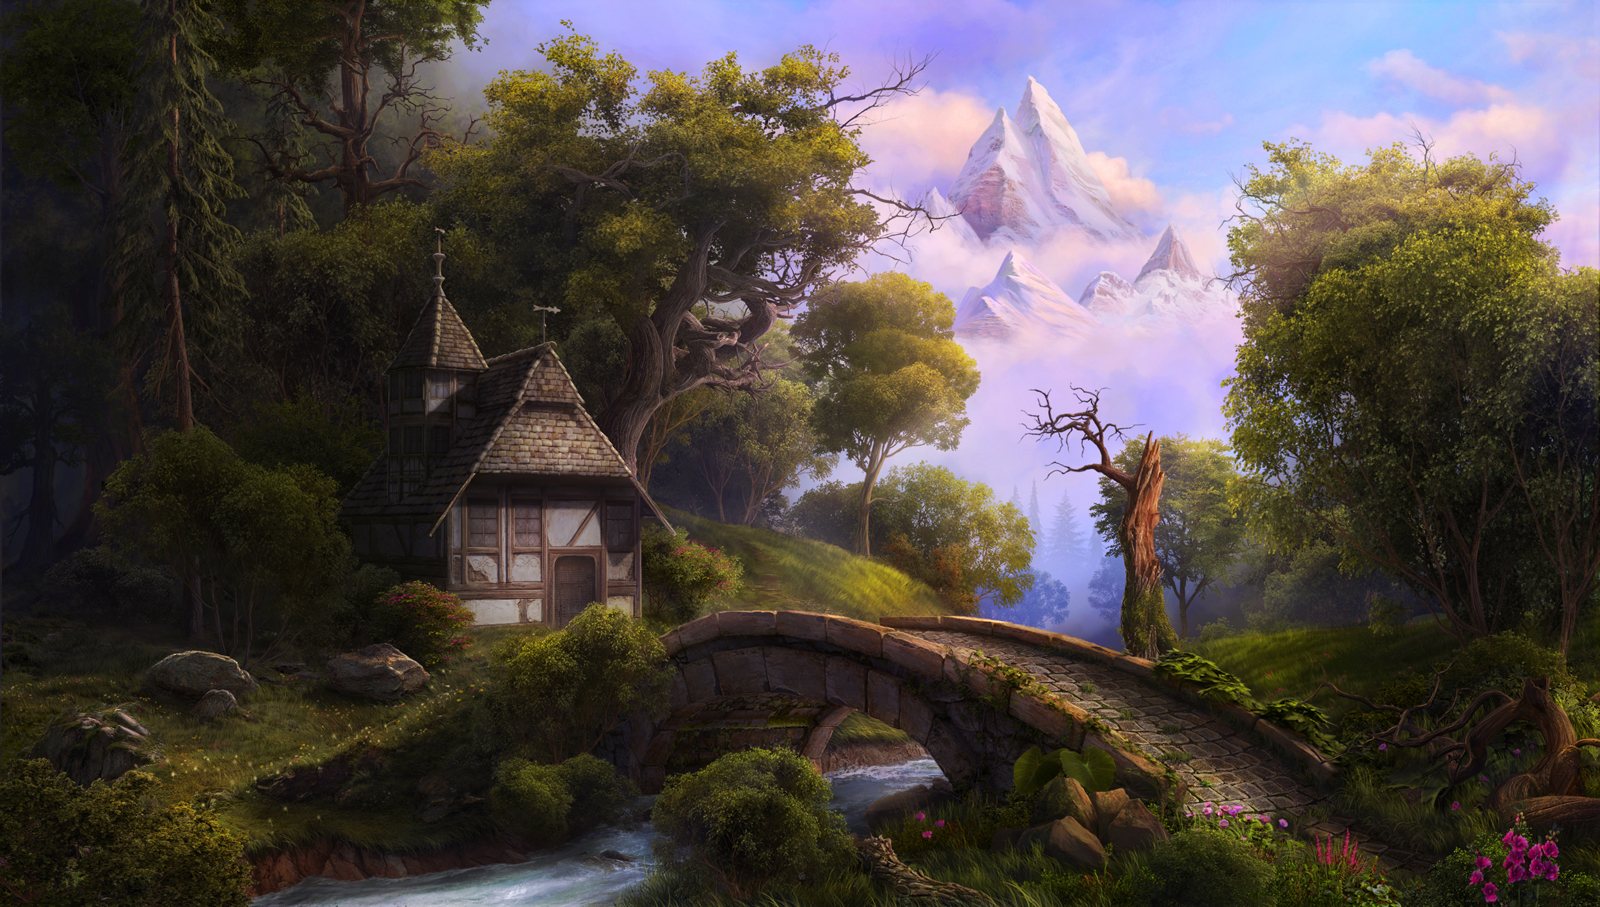 fairytale landscape